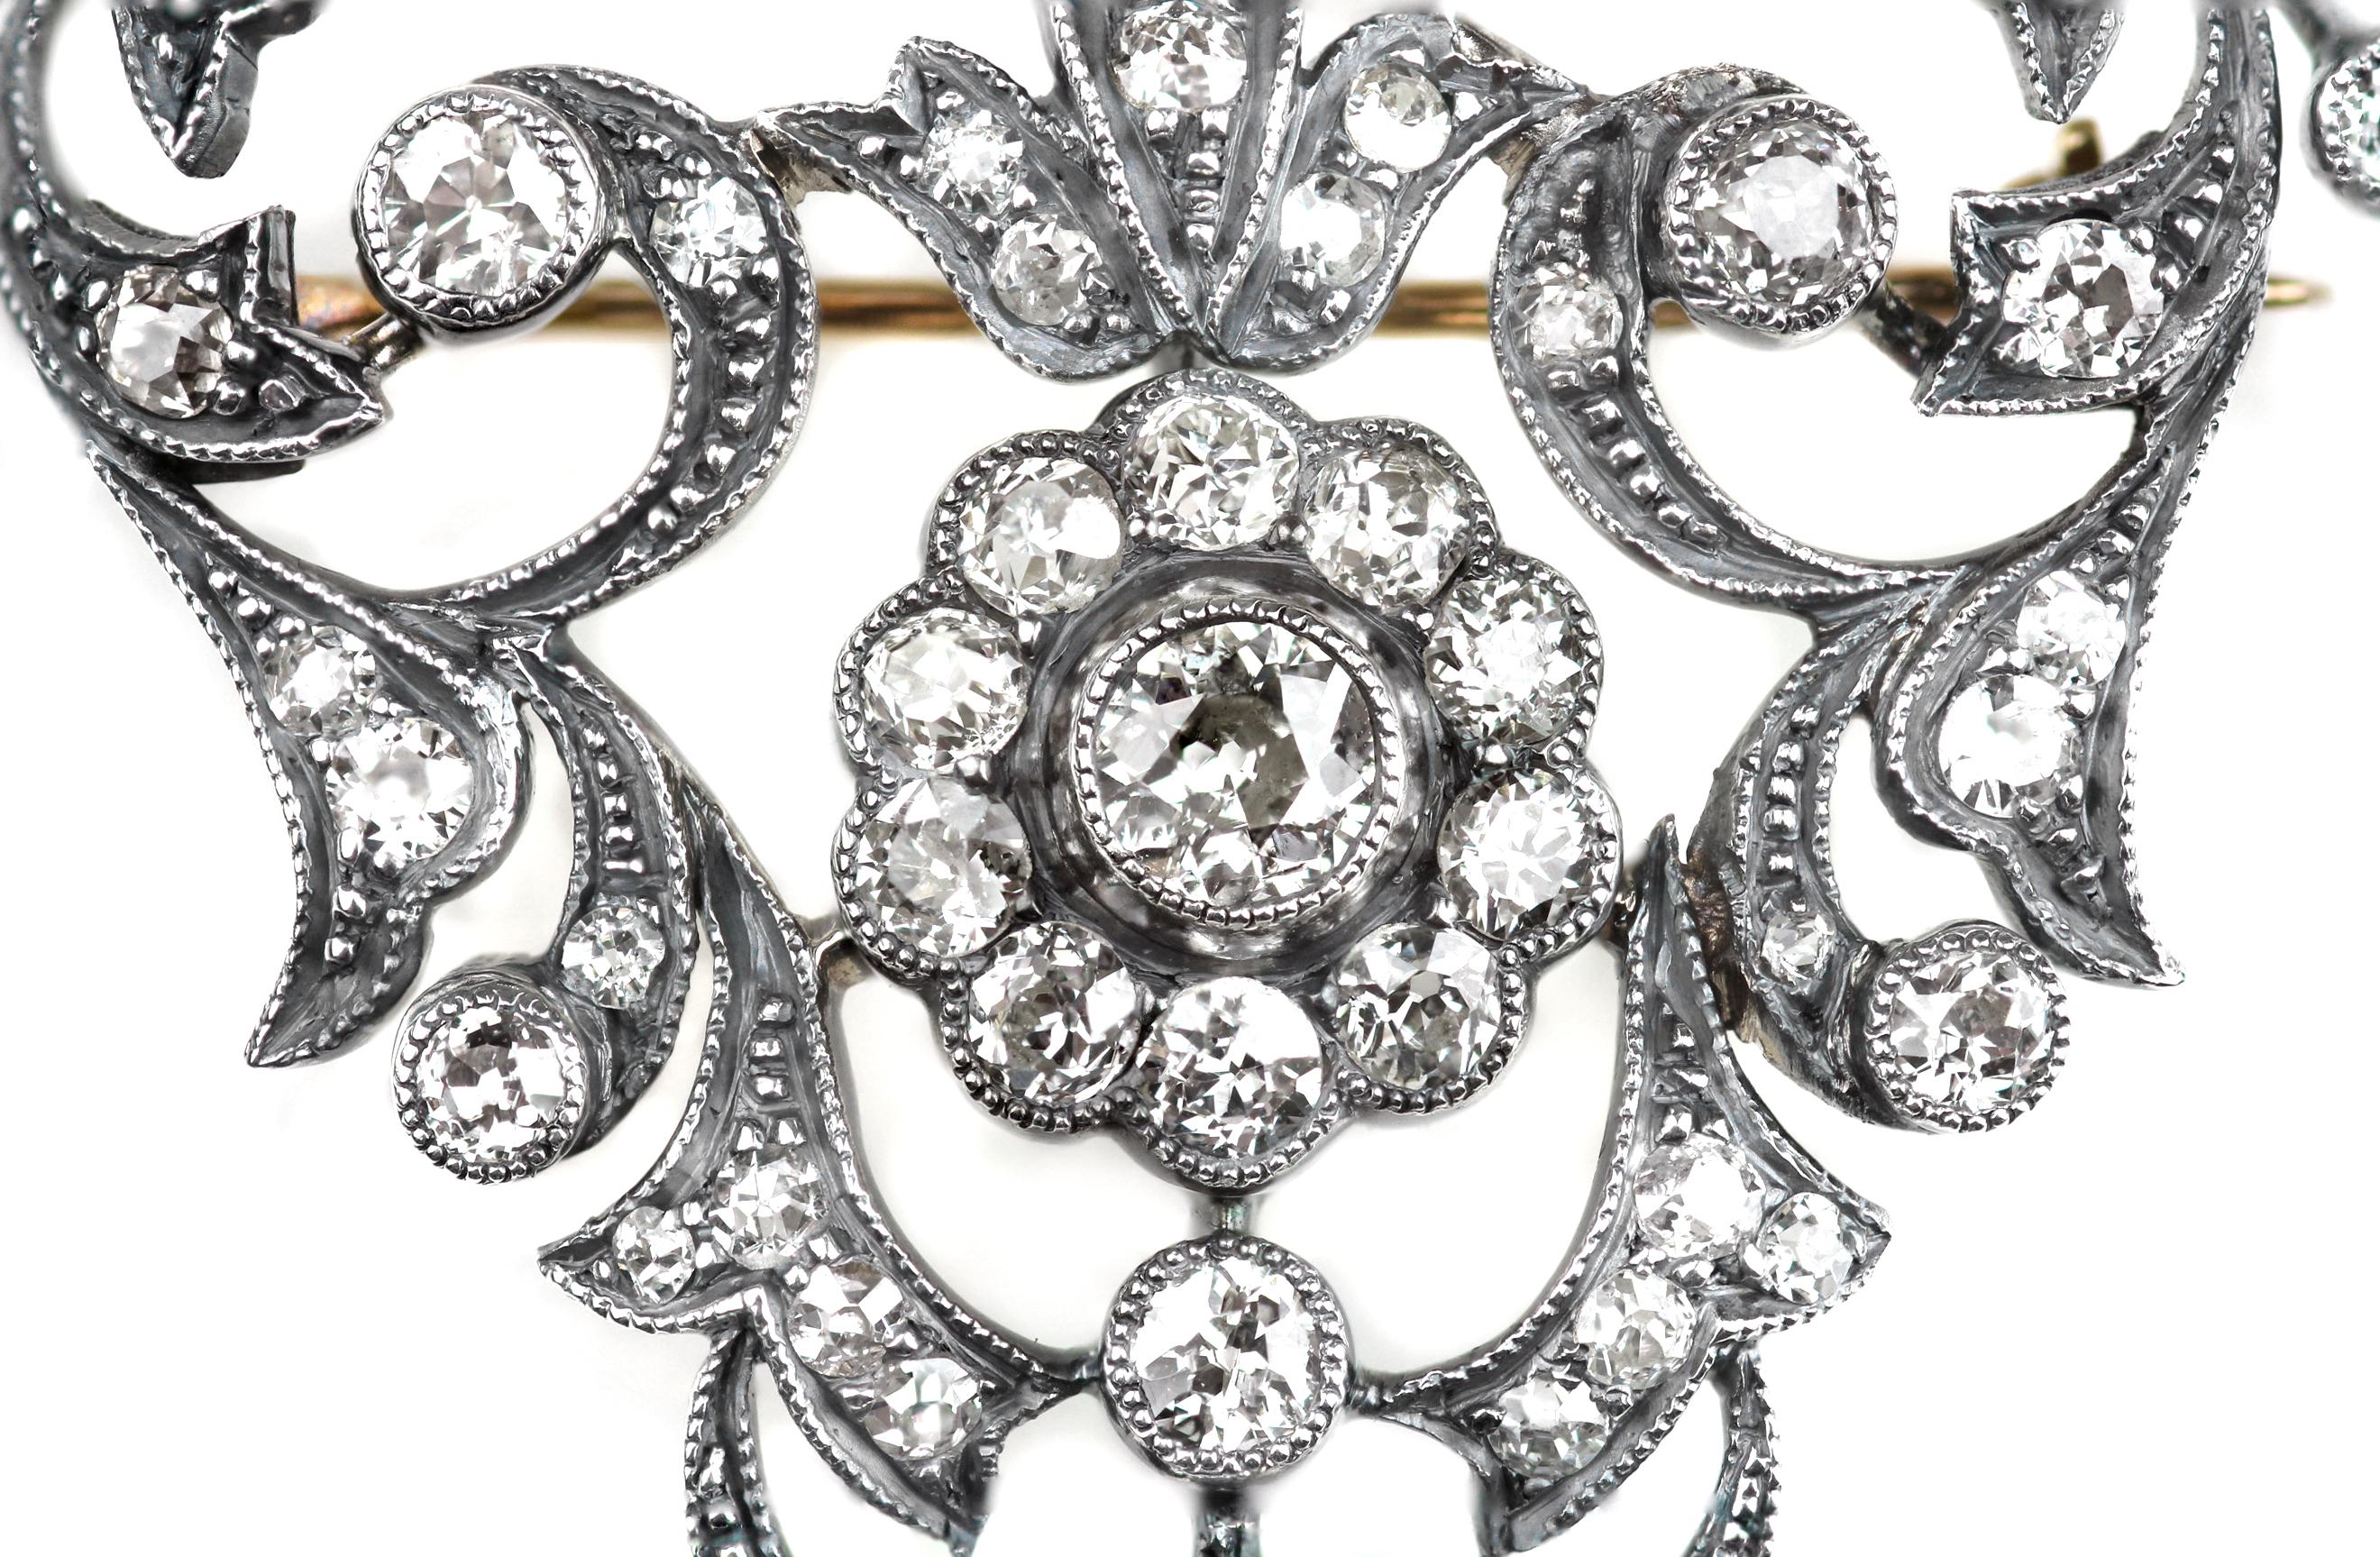 Antike viktorianische Filigranbrosche mit Diamanten im alten europäischen Schliff, gefasst in Silber und Gold. Diese Brosche ist ein schönes Beispiel für viktorianische Eleganz und Juwelierskunst.
67 x Diamanten im Altschliff, ungefähres